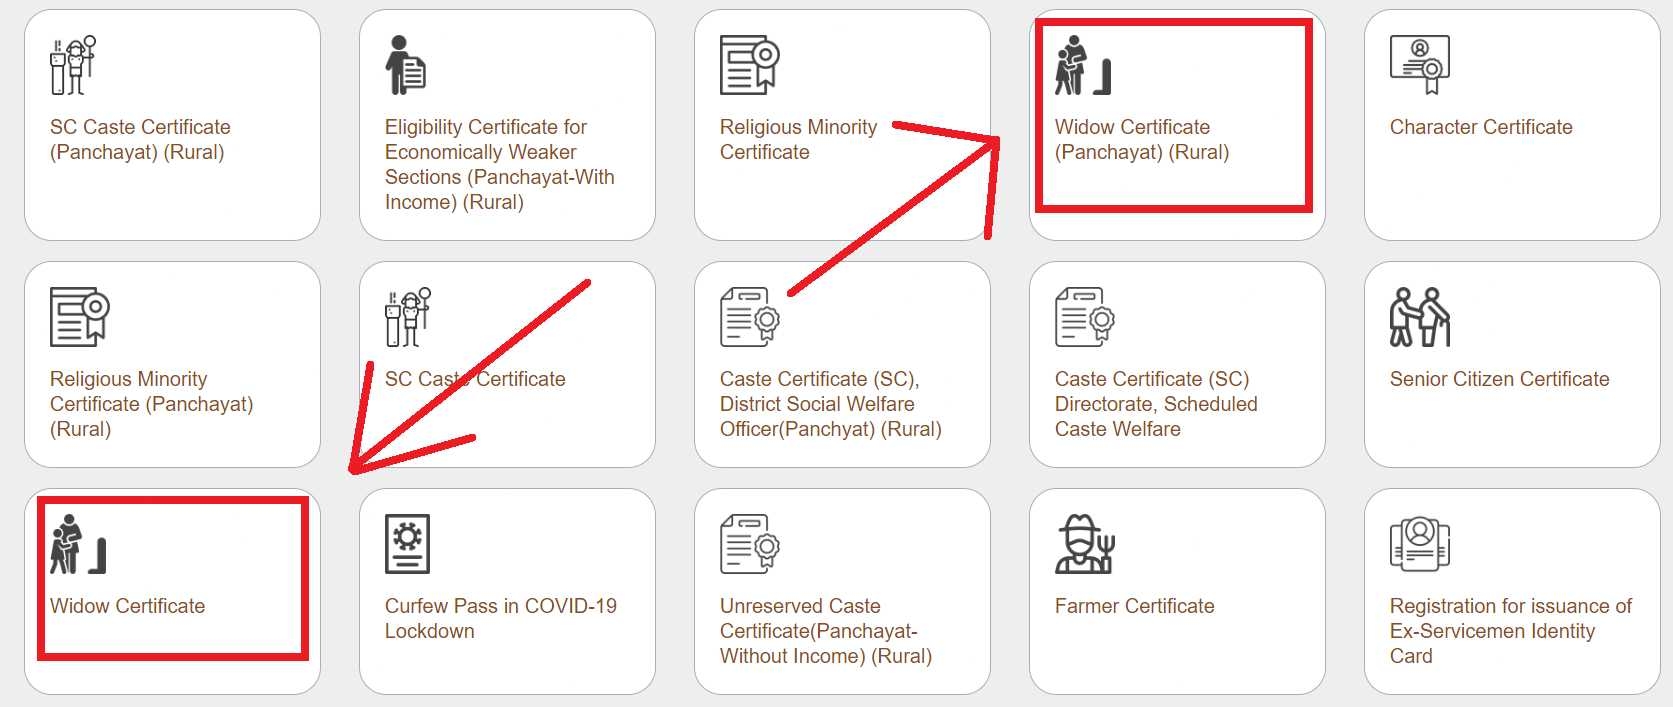 Apply online for widow certificate Gujarat